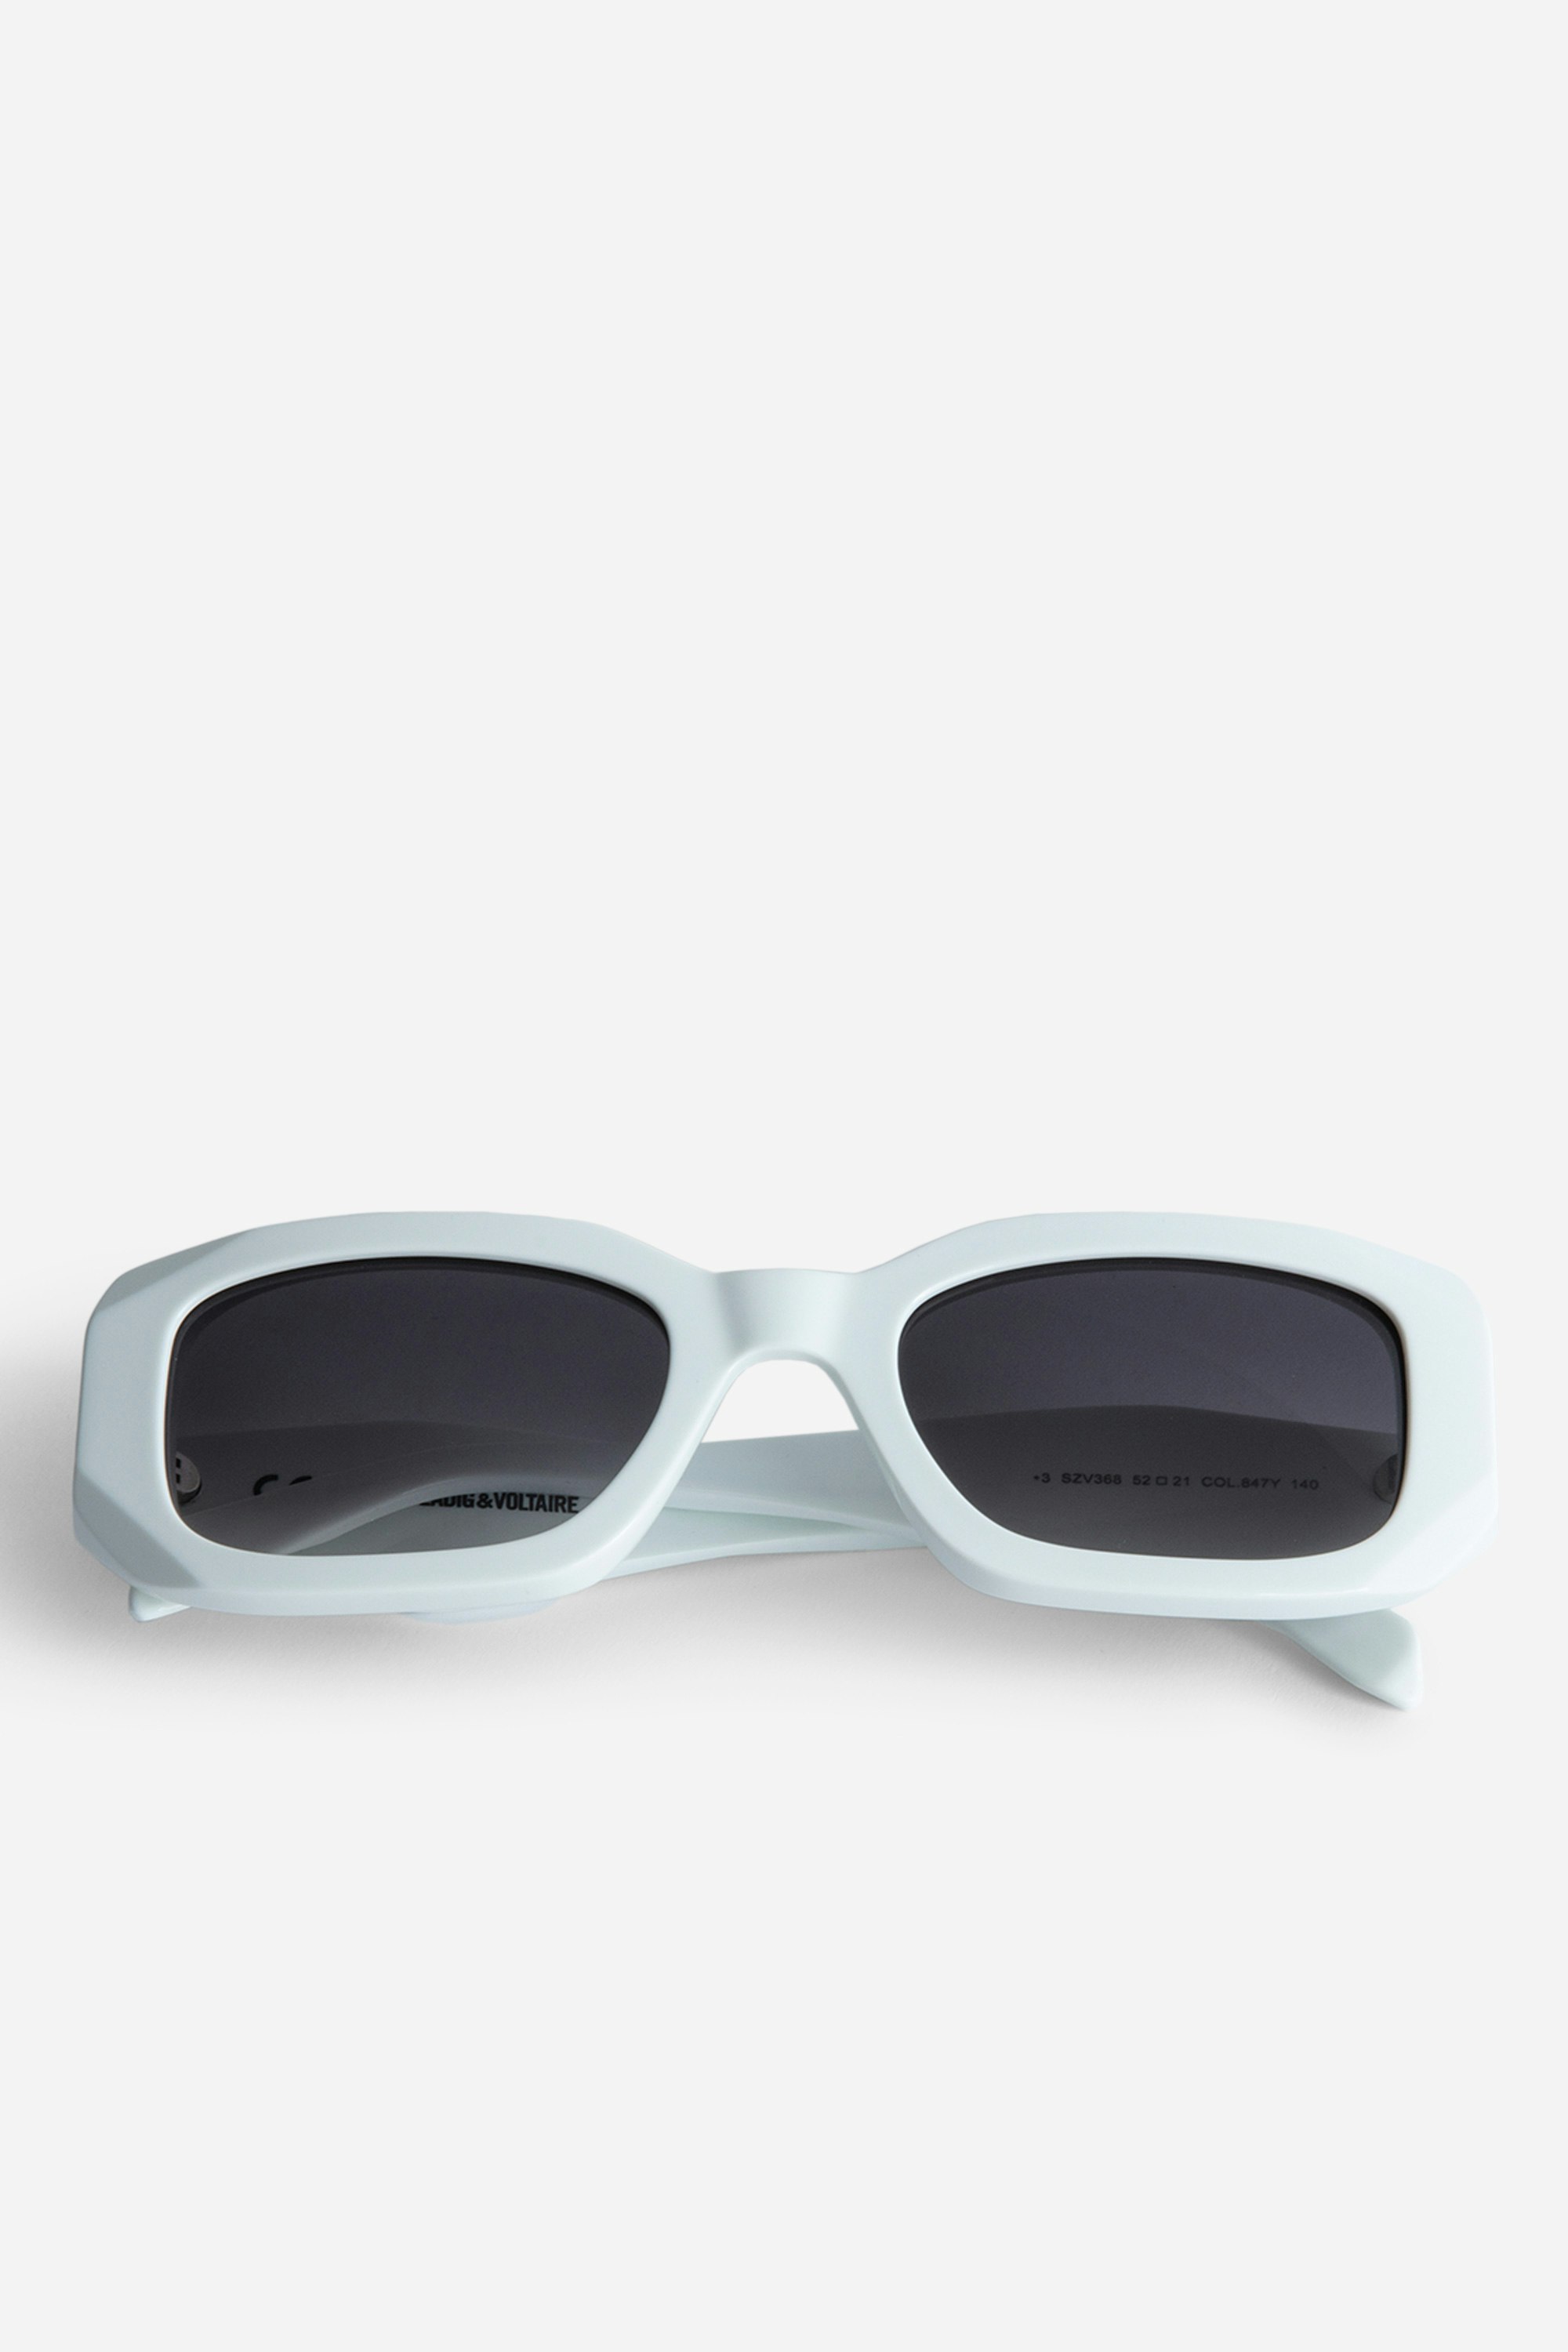 Sonnenbrille ZV23H3 Weiße, rechteckige Unisex-Sonnenbrille mit Flügeln auf den destrukturierten Bügeln.